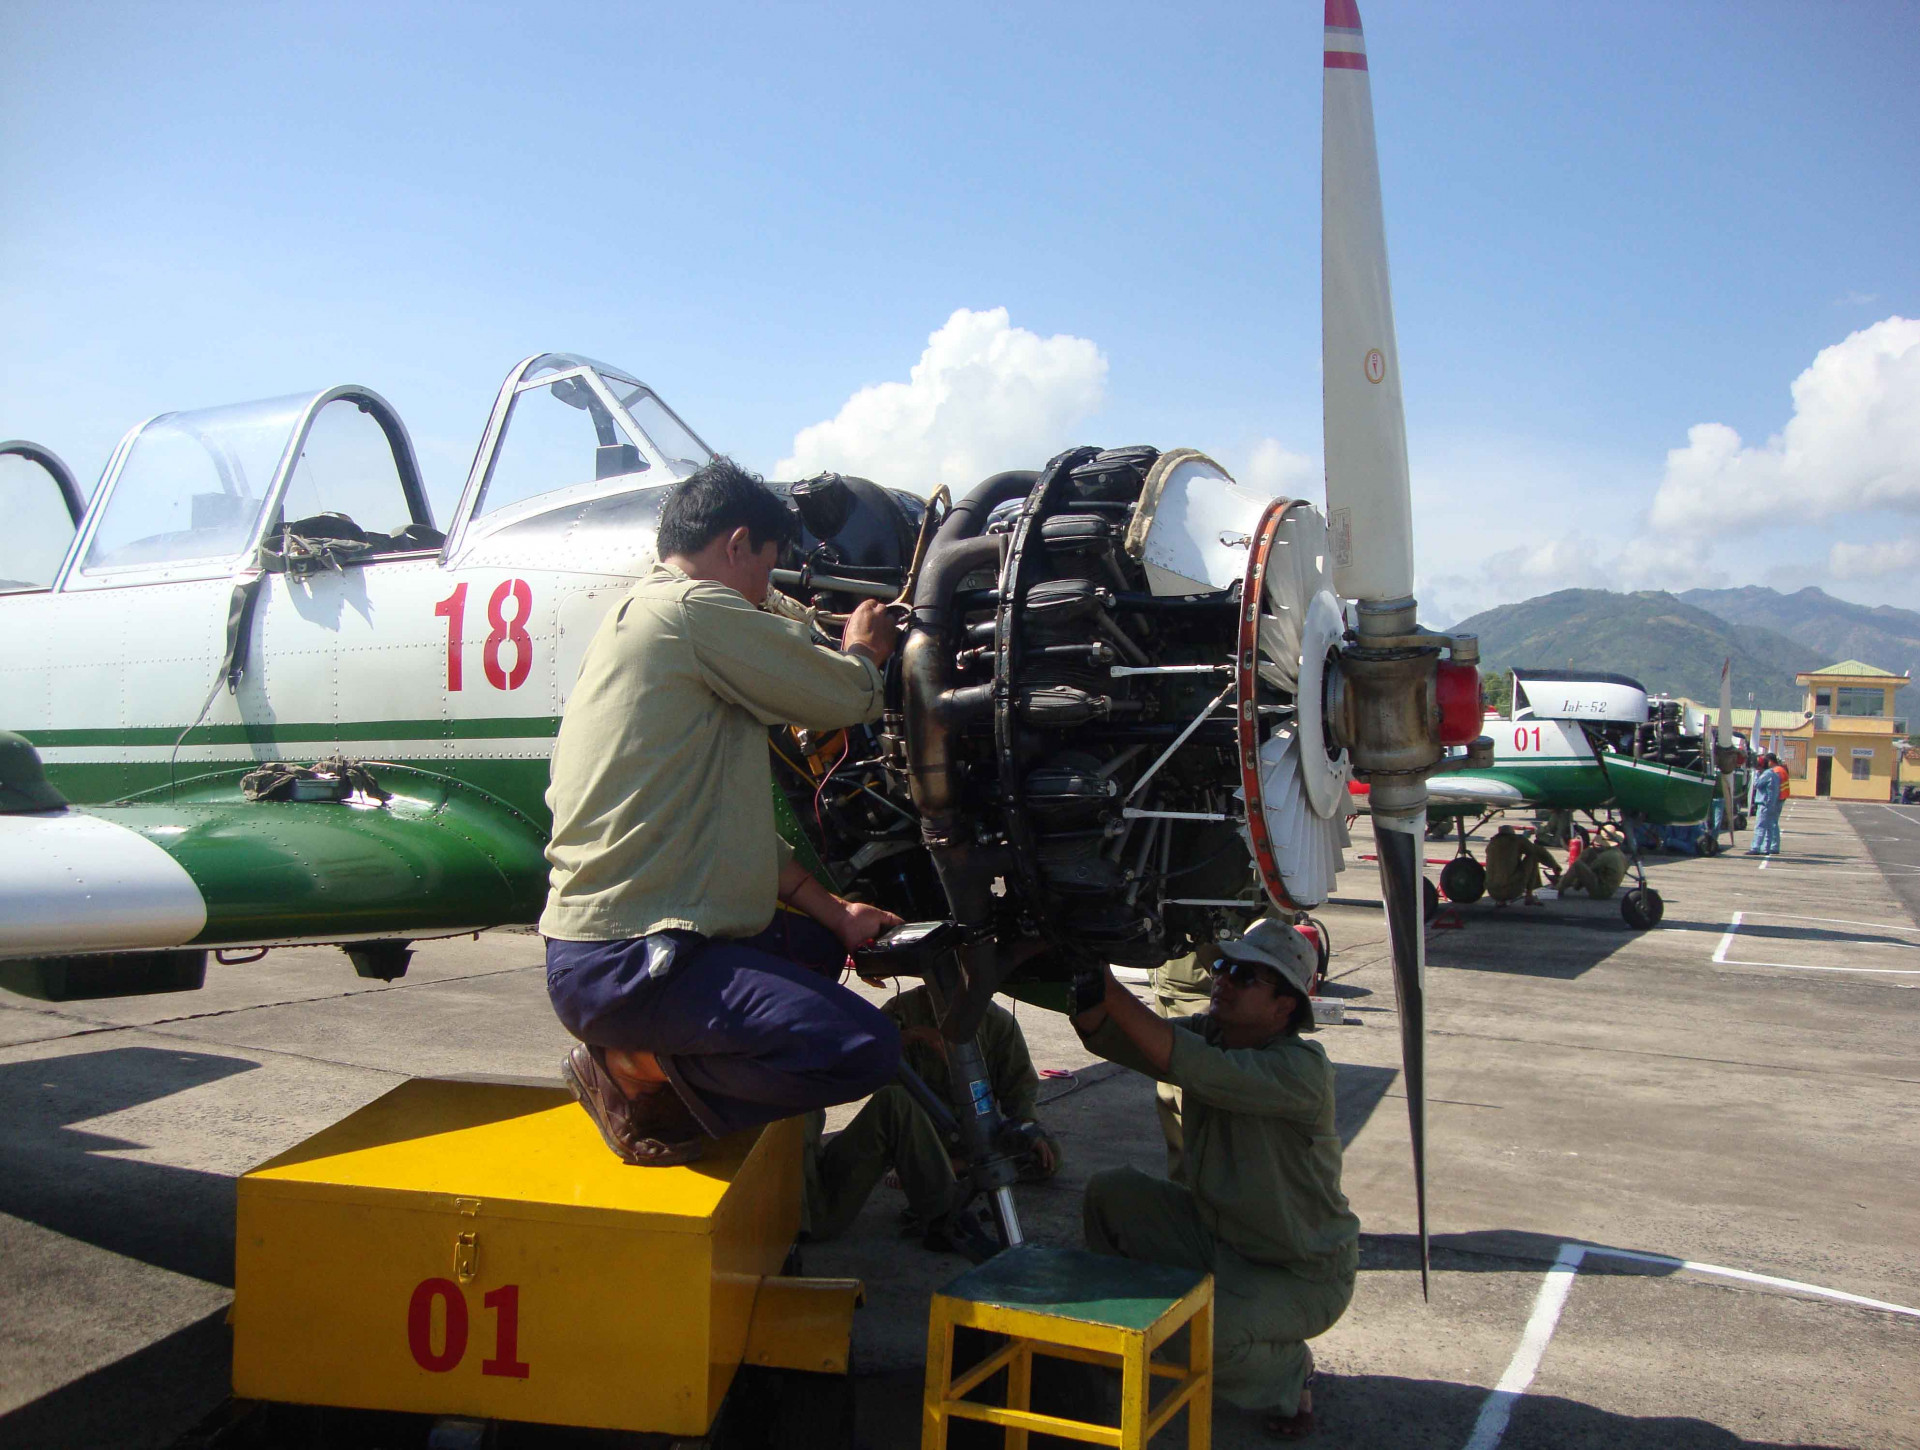 Kiểm tra tình trạng kỹ thuật Iak - 52 trước khi bay.